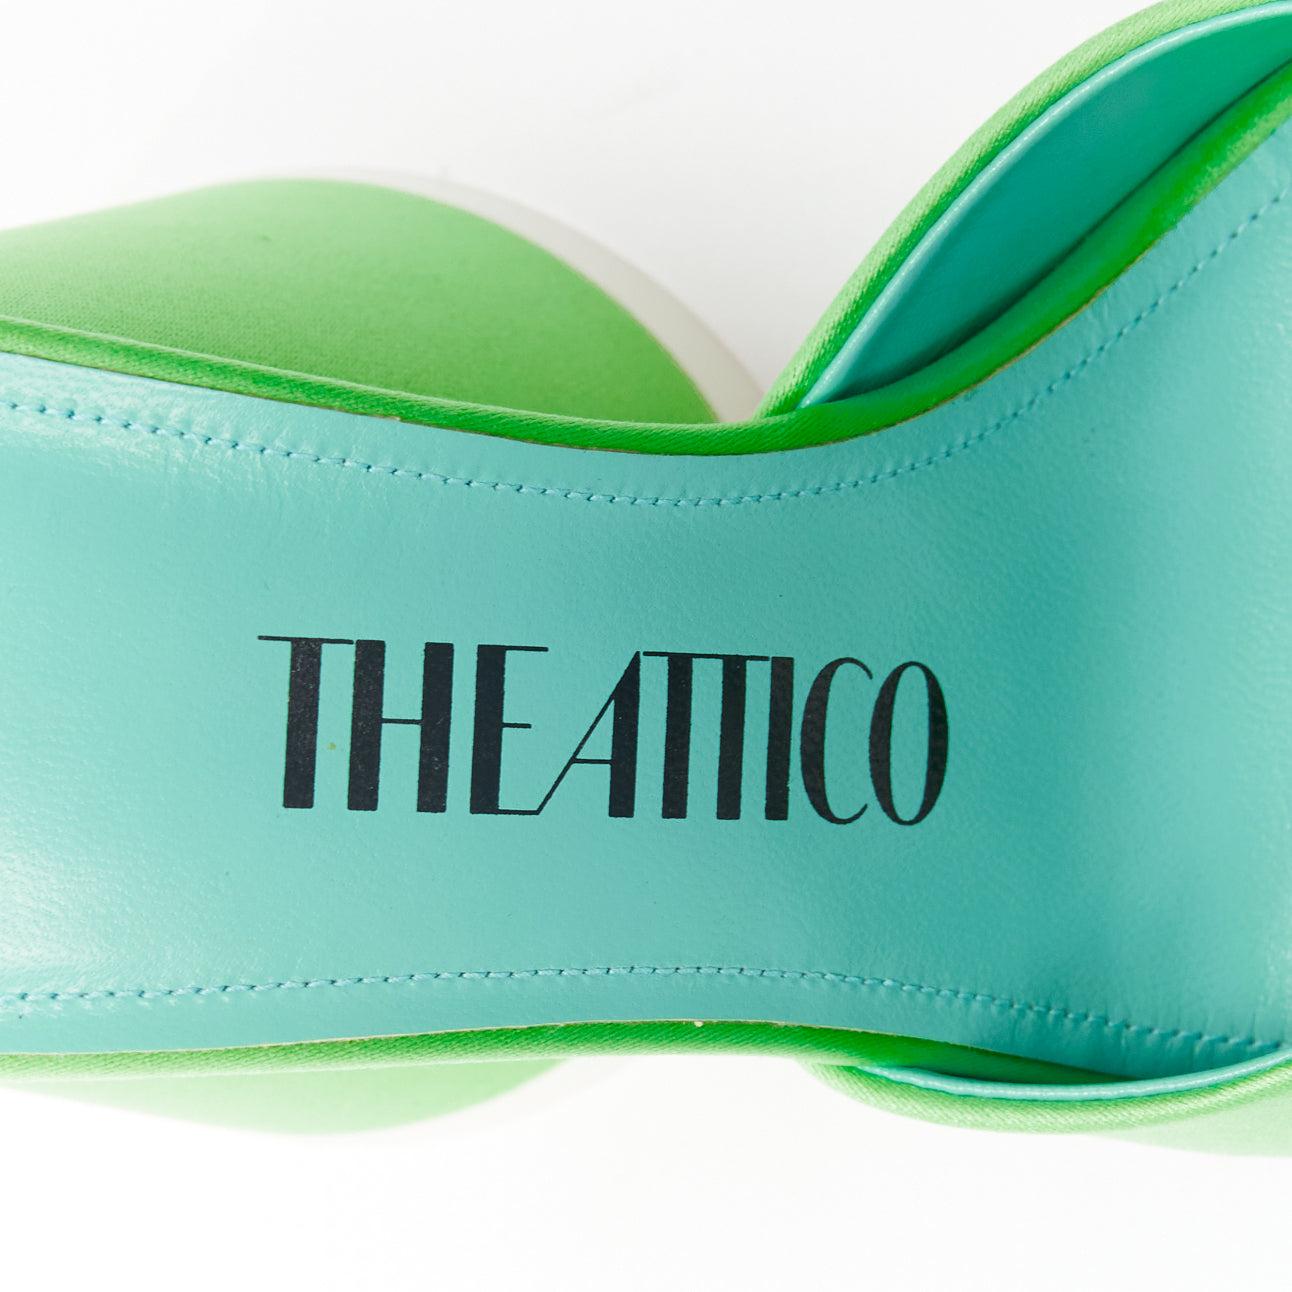 THE ATTICO Luz mint green satin sculptural cone heel open toe mule EU36.5 For Sale 5